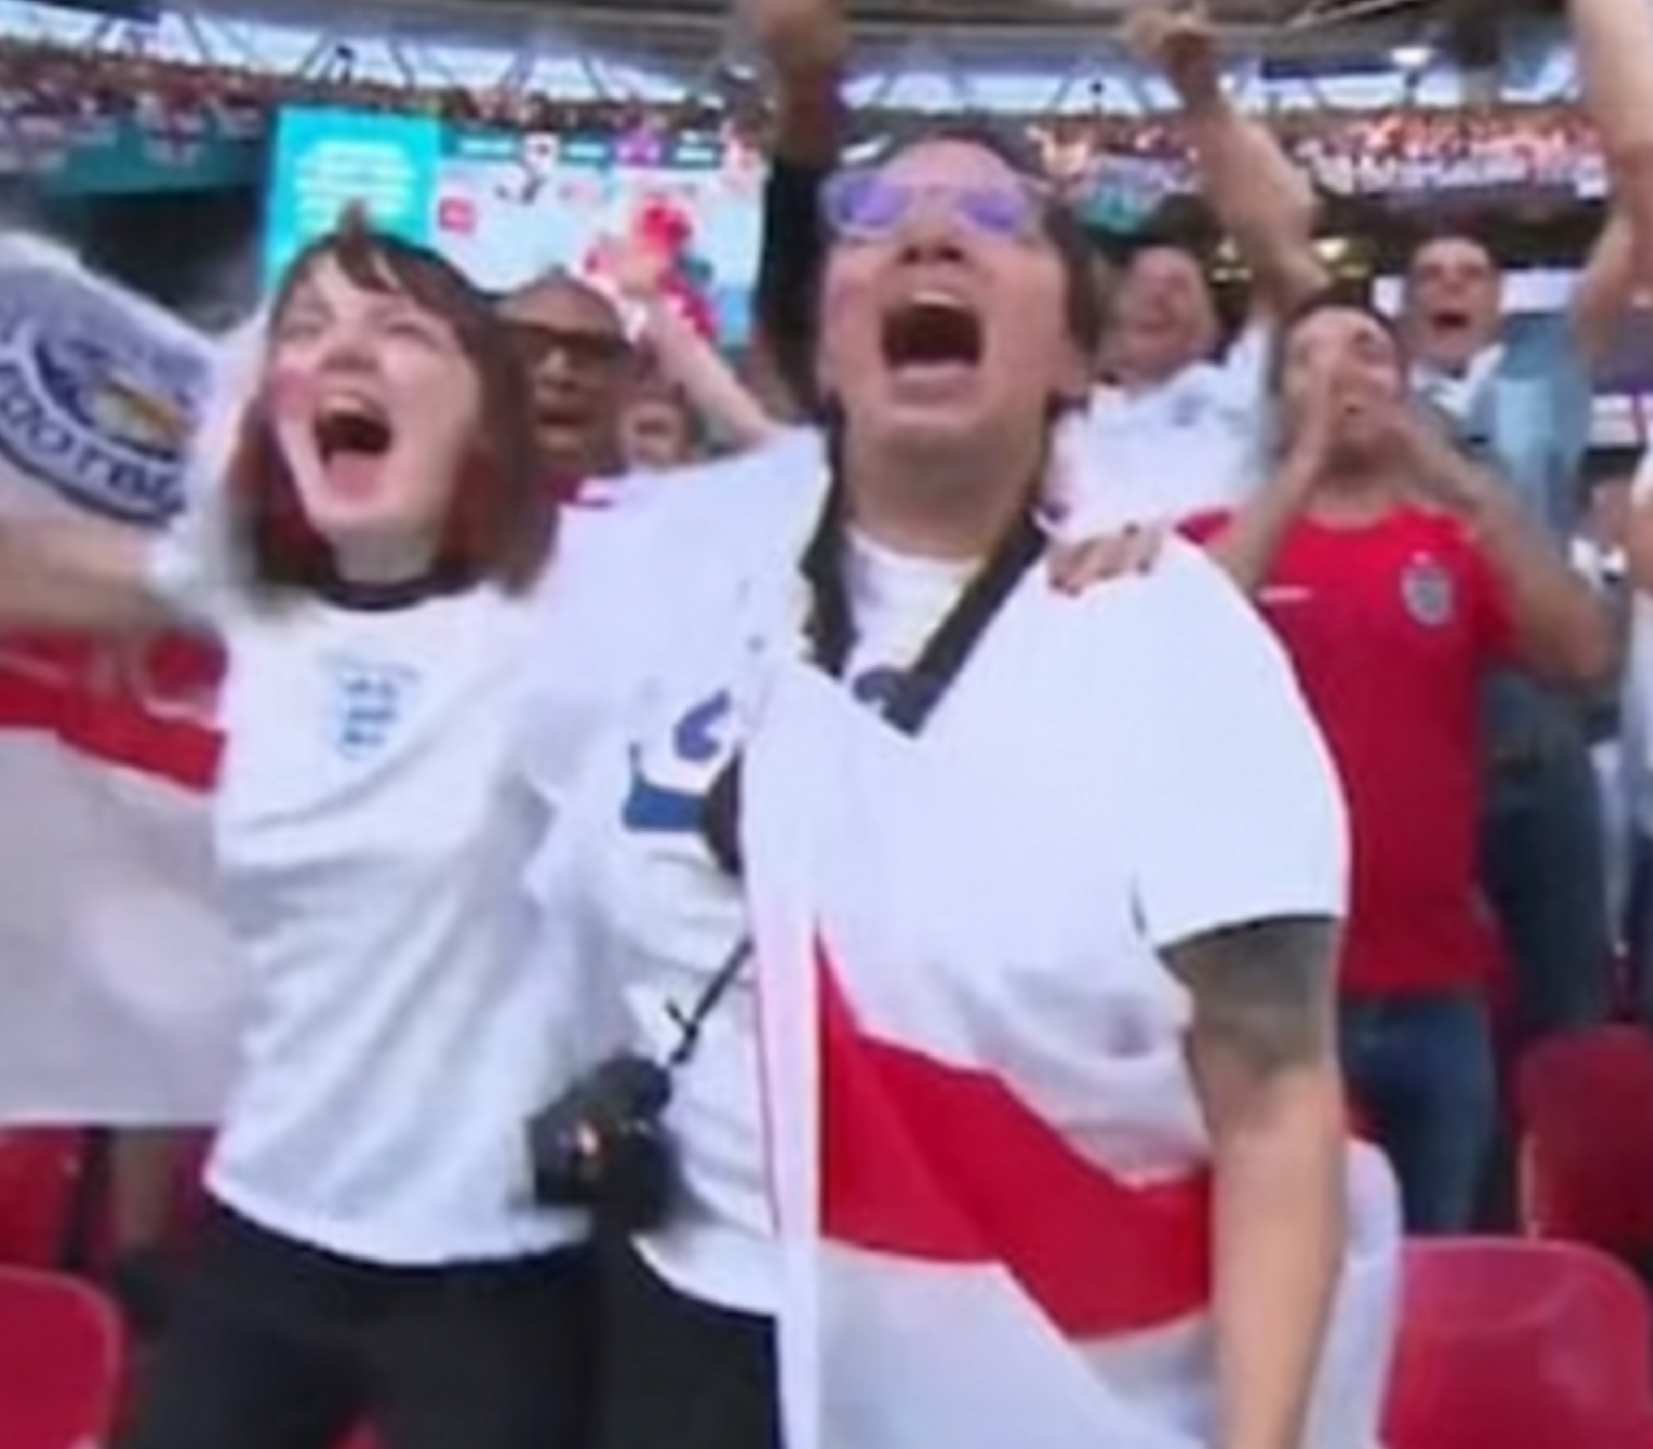 Al carrer: El cap l'enxampa per la tele veient l'Eurocopa a Wembley